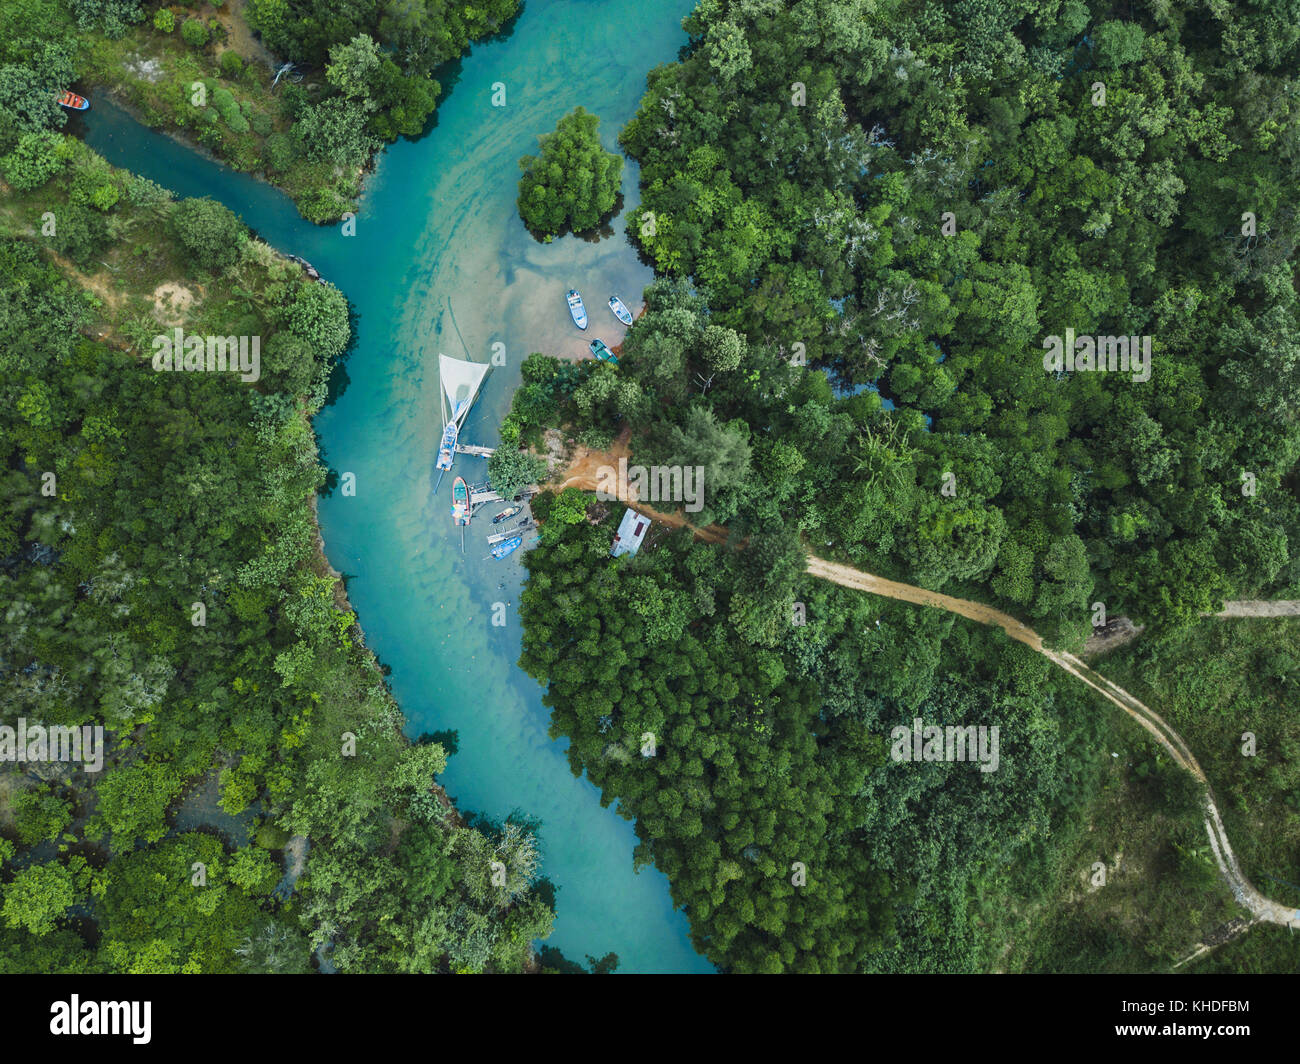 La Thaïlande, paysage aérien drone vue sur la rivière en vert forêt tropicale, belle nature paysage de désert jungle Banque D'Images